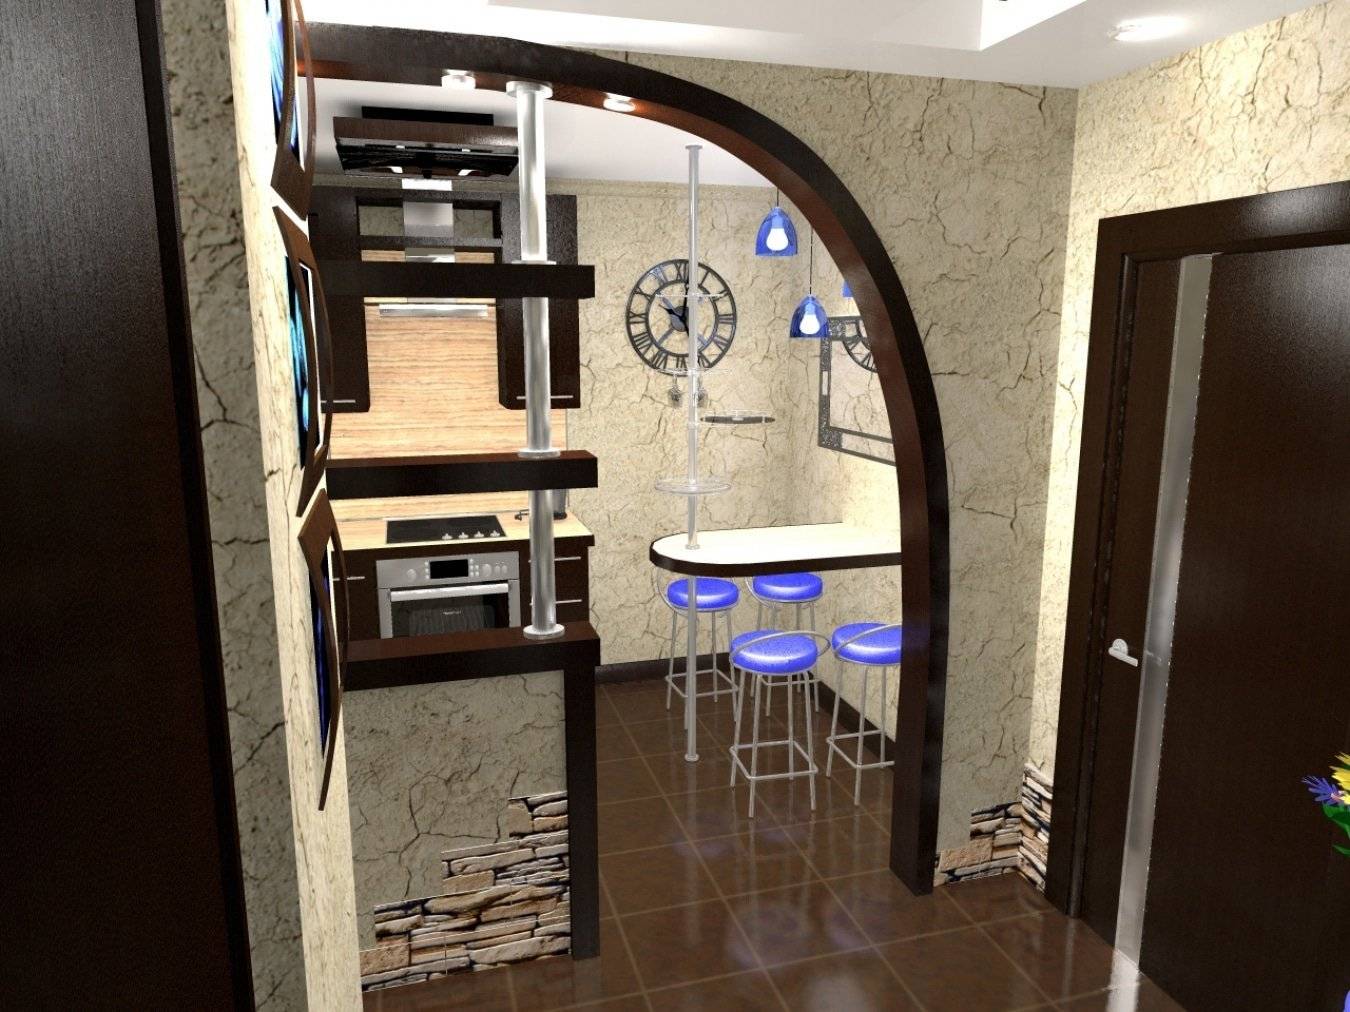 Кухня-прихожая совмещенная с коридором: фото дизайна, выбор обоев и планировка